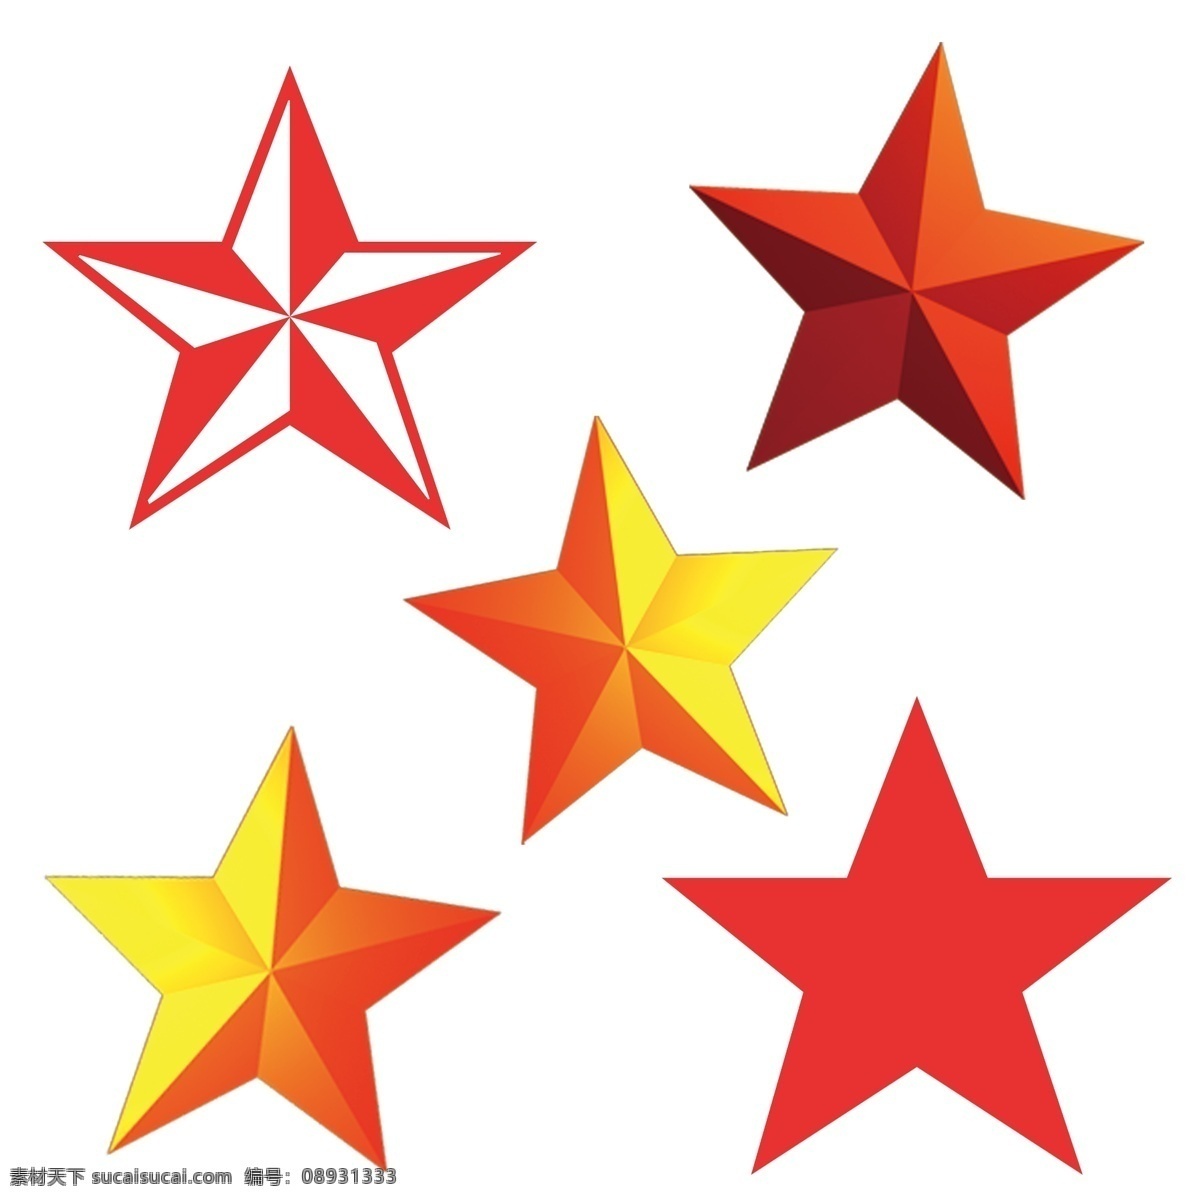 五角星 模板下载 五星 星星 大图 设计素材 背景素材 分层 源文件 白色